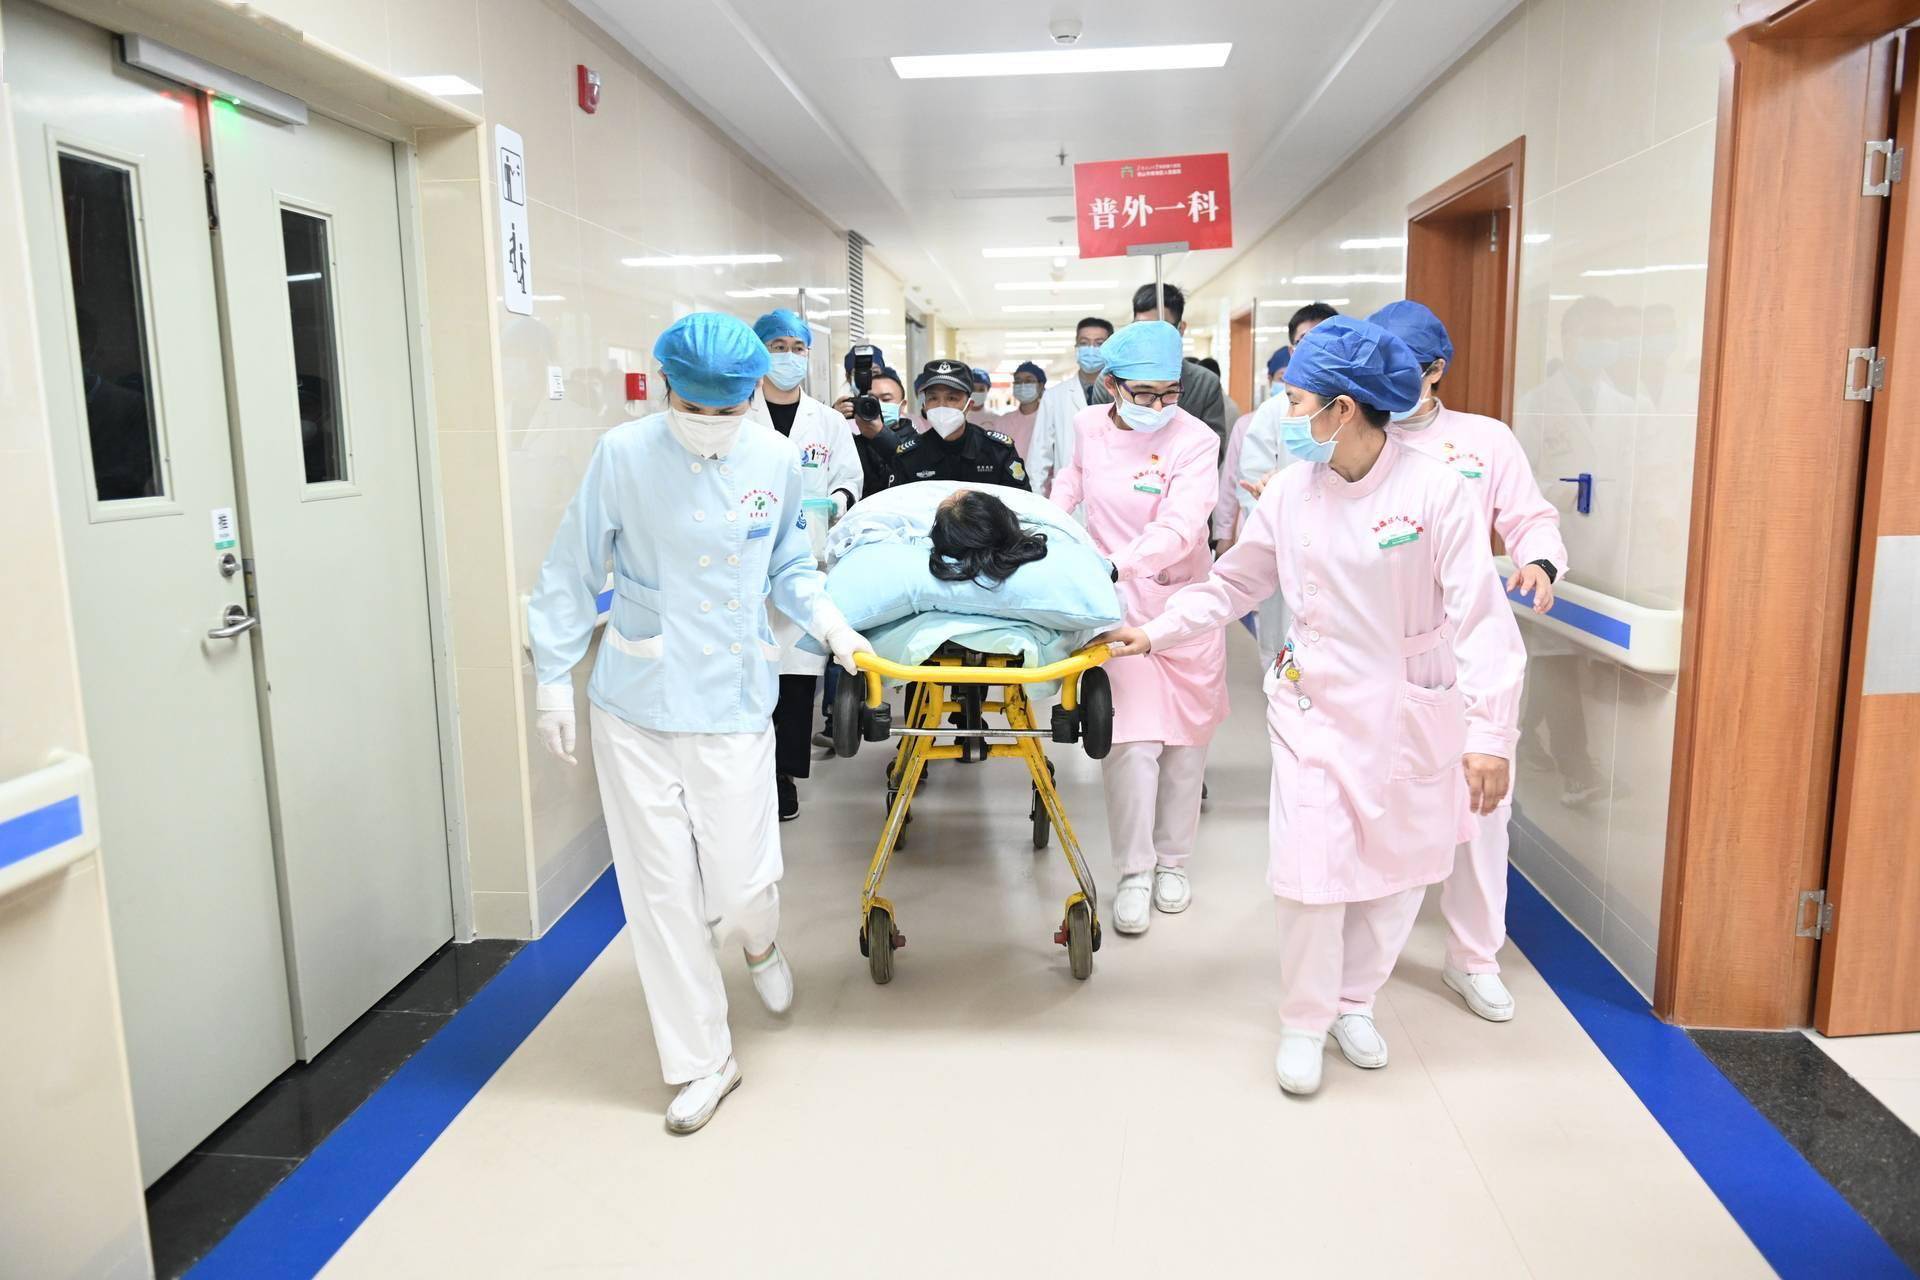 铁骑护航南海医院患者转运 1月27日新南医全面对外试运行